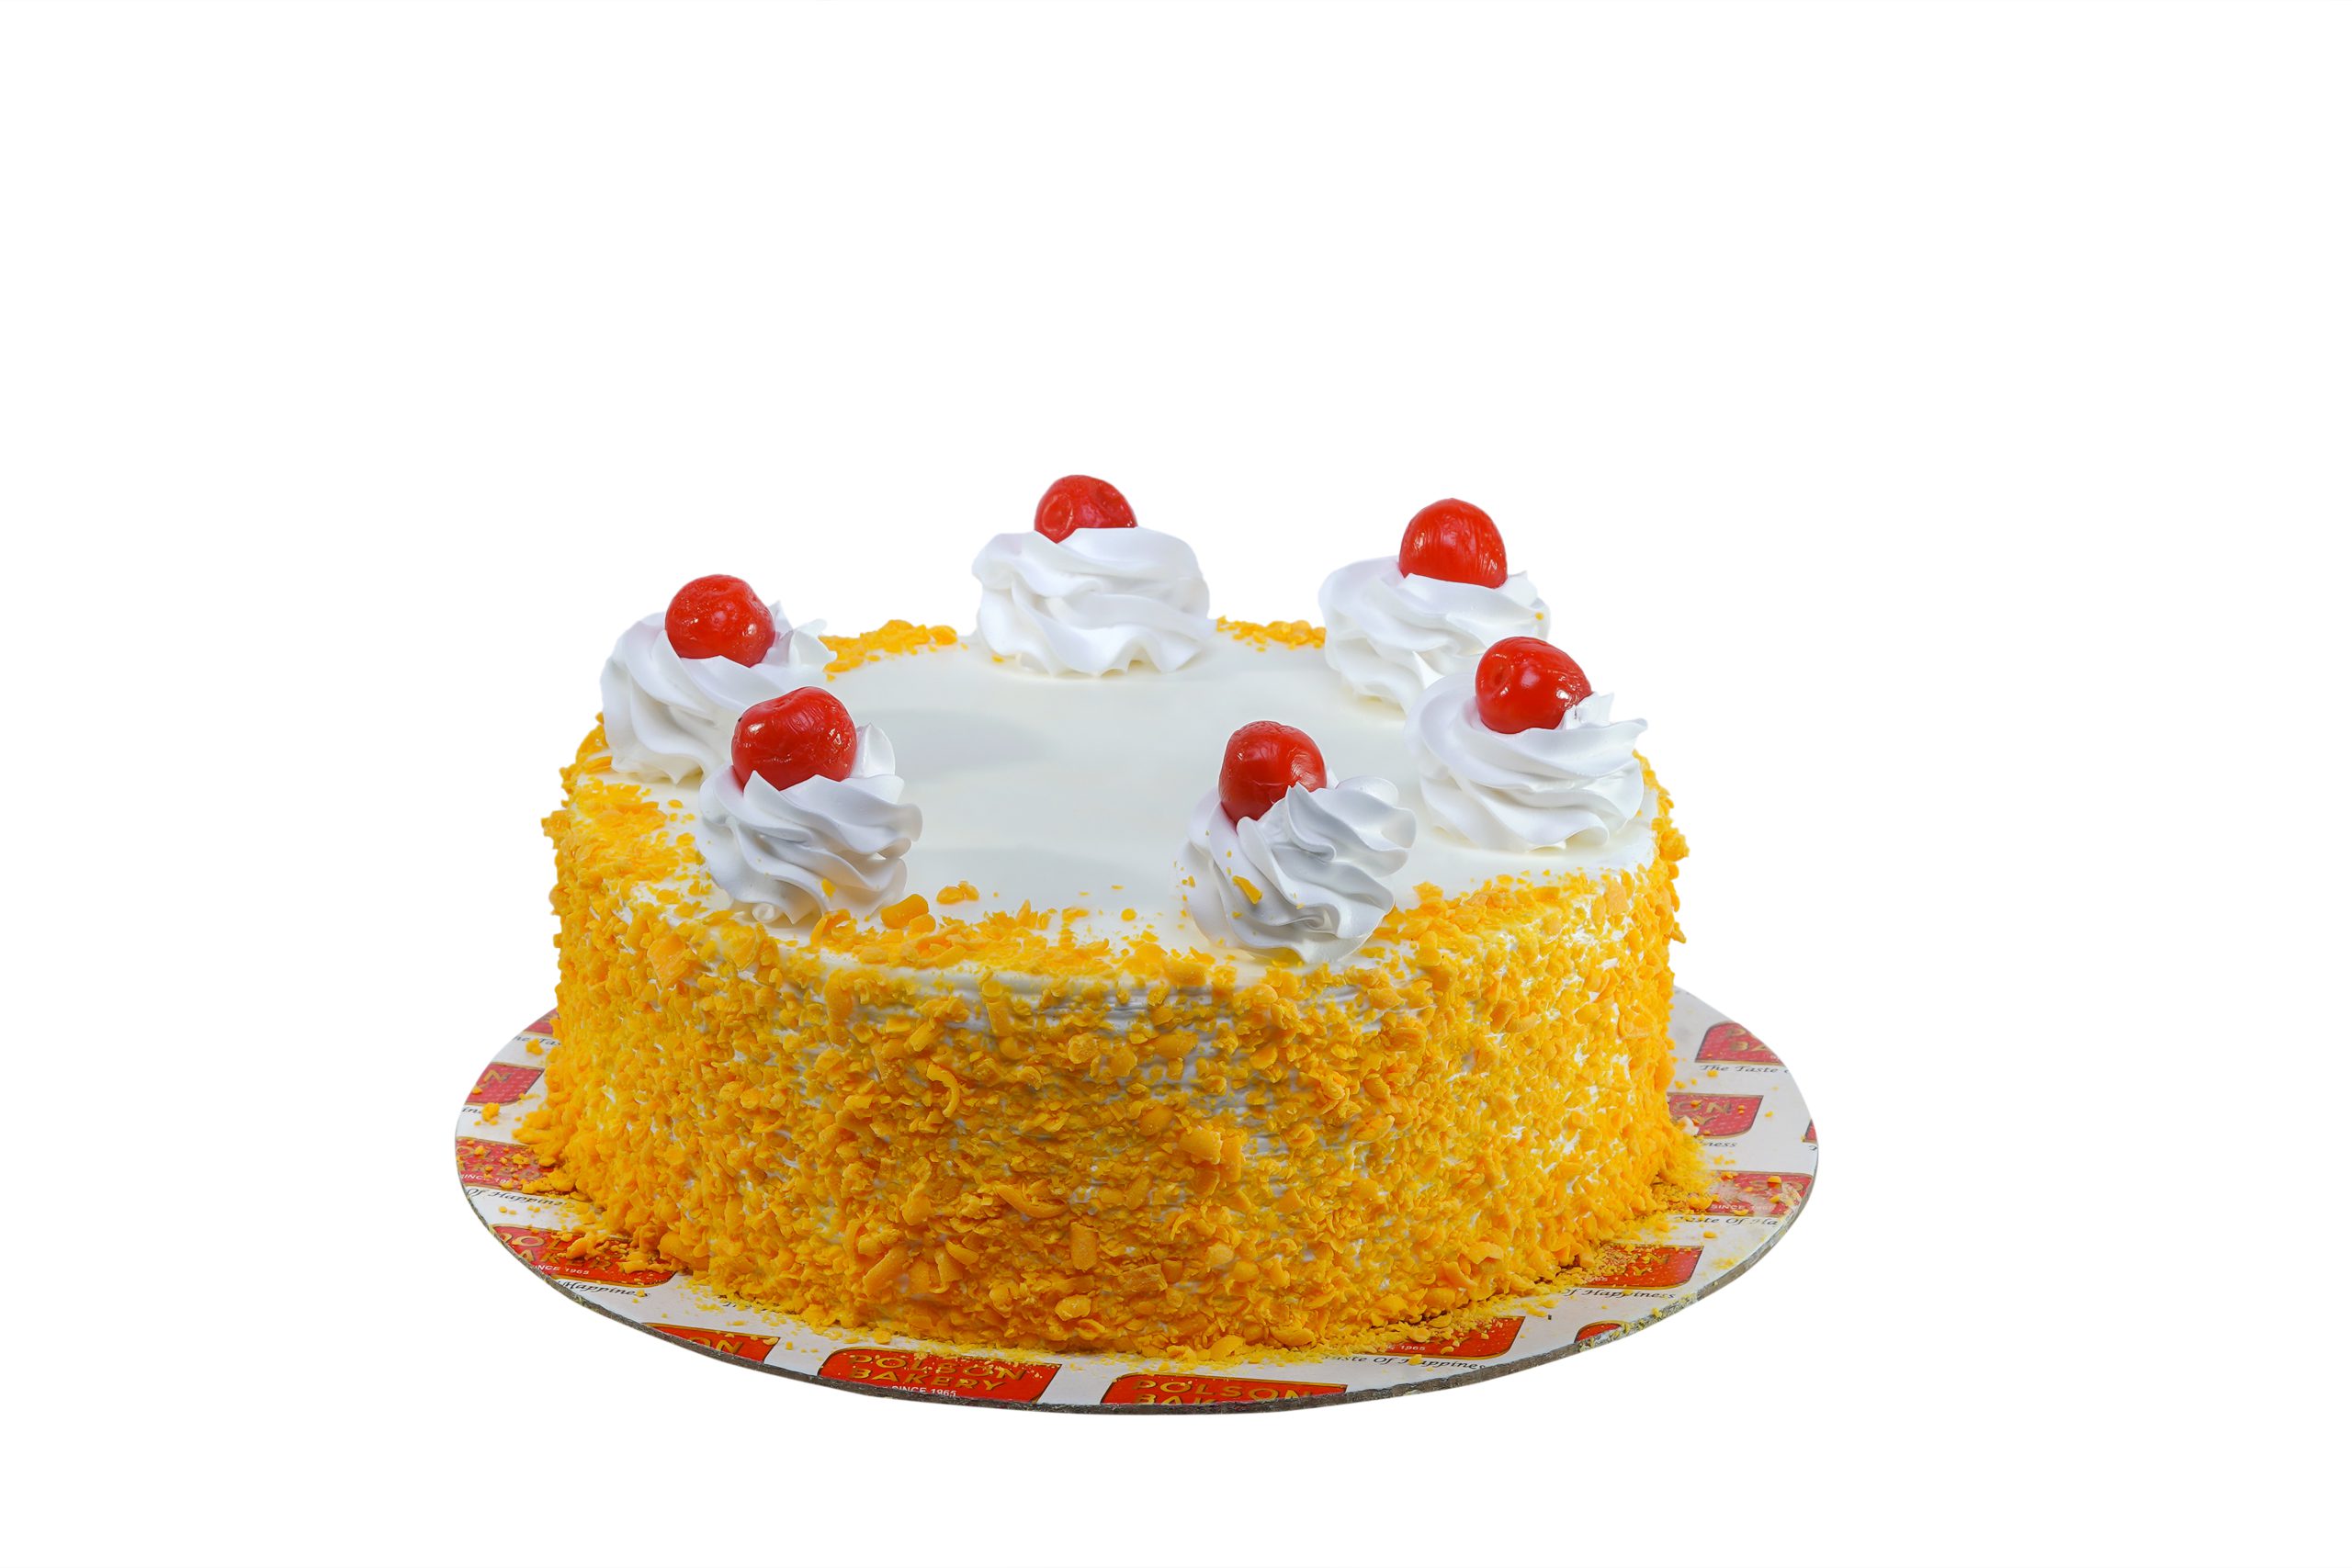 Buy/Send Krishna Birthday Cake Online @ Rs. 2309 - SendBestGift